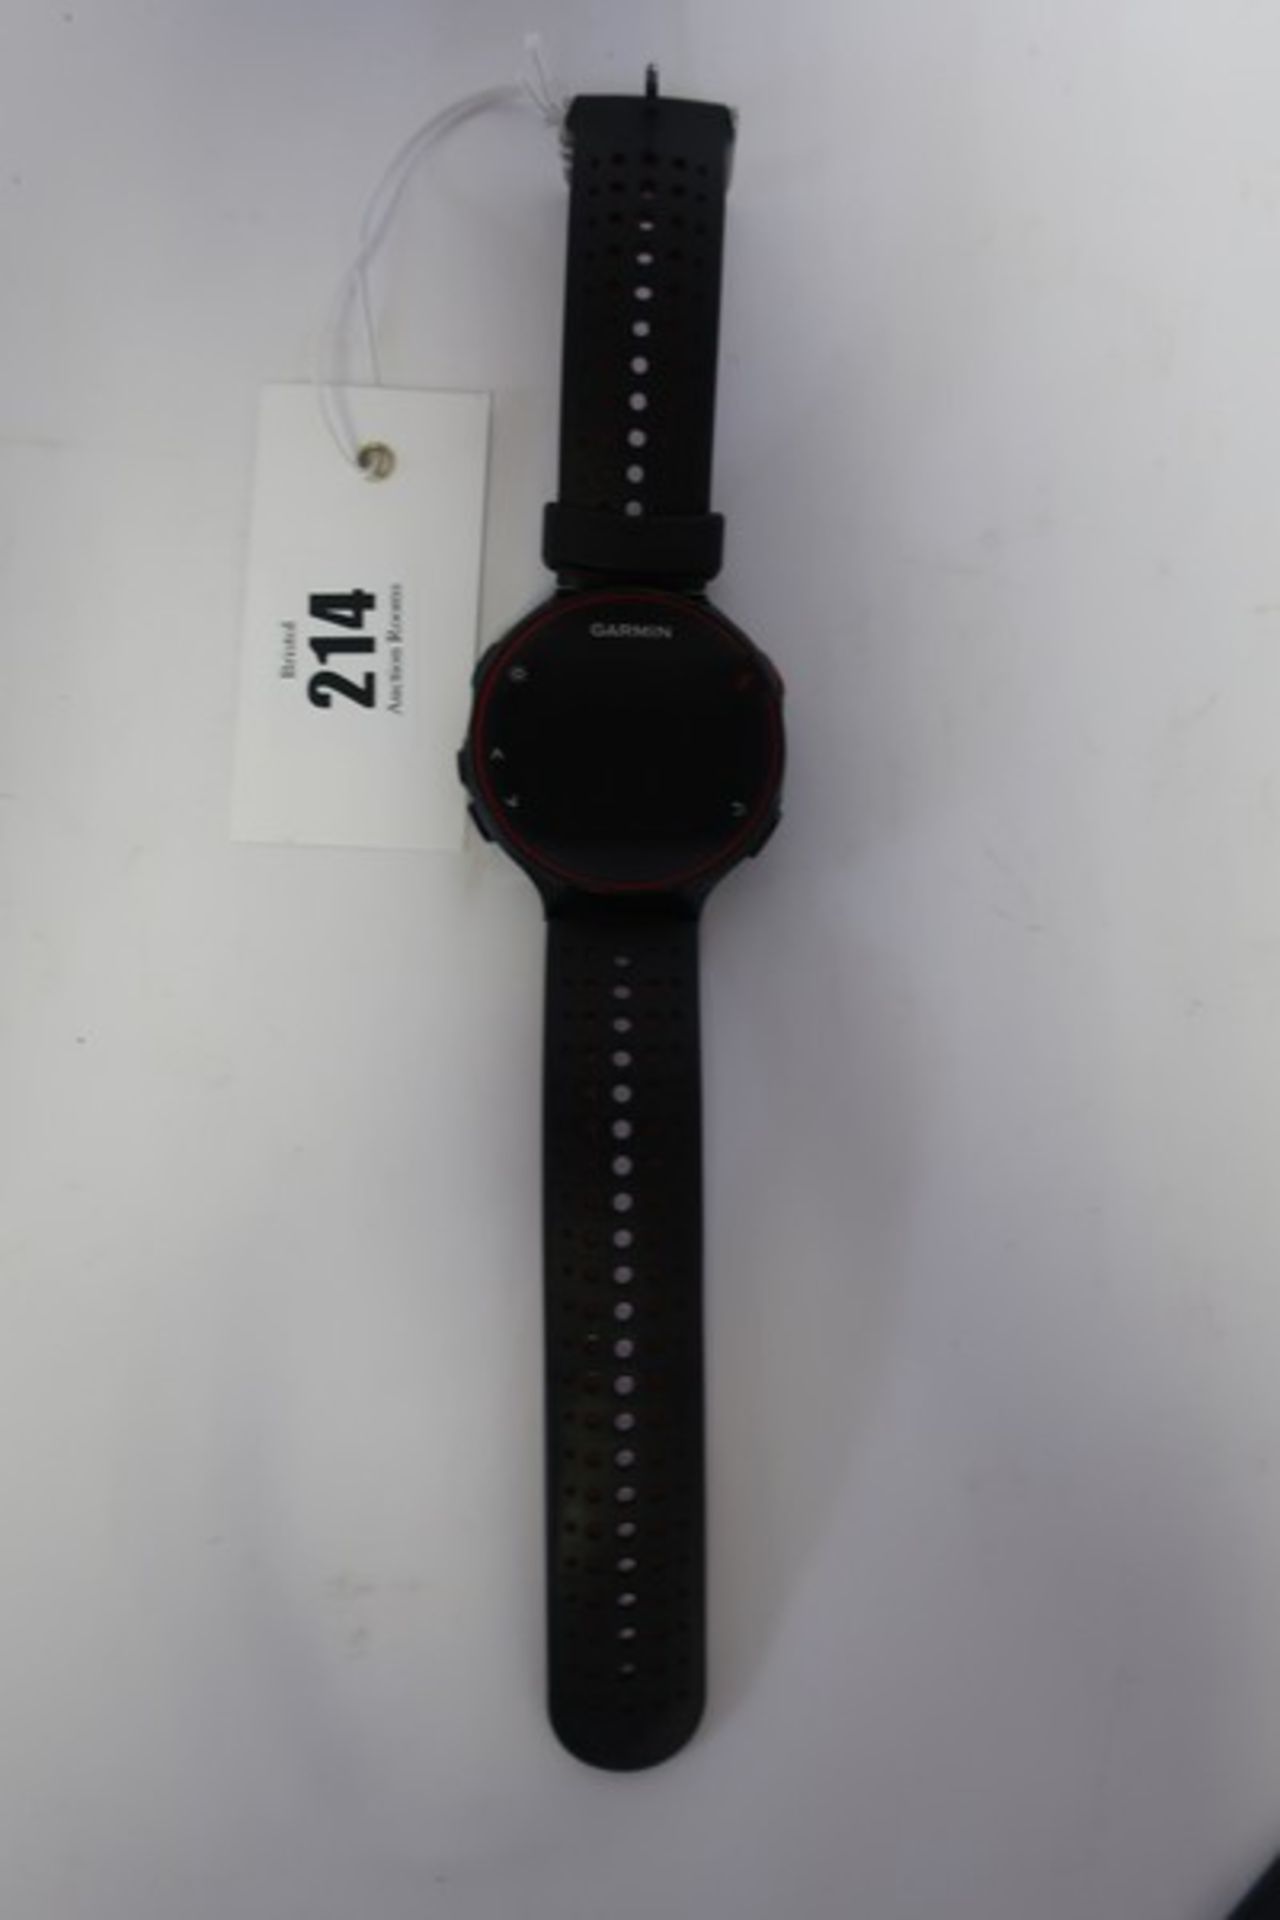 A Garmin Forerunner 235 GPS HR running watch in Black/Red (Serial: 4DZ253929).